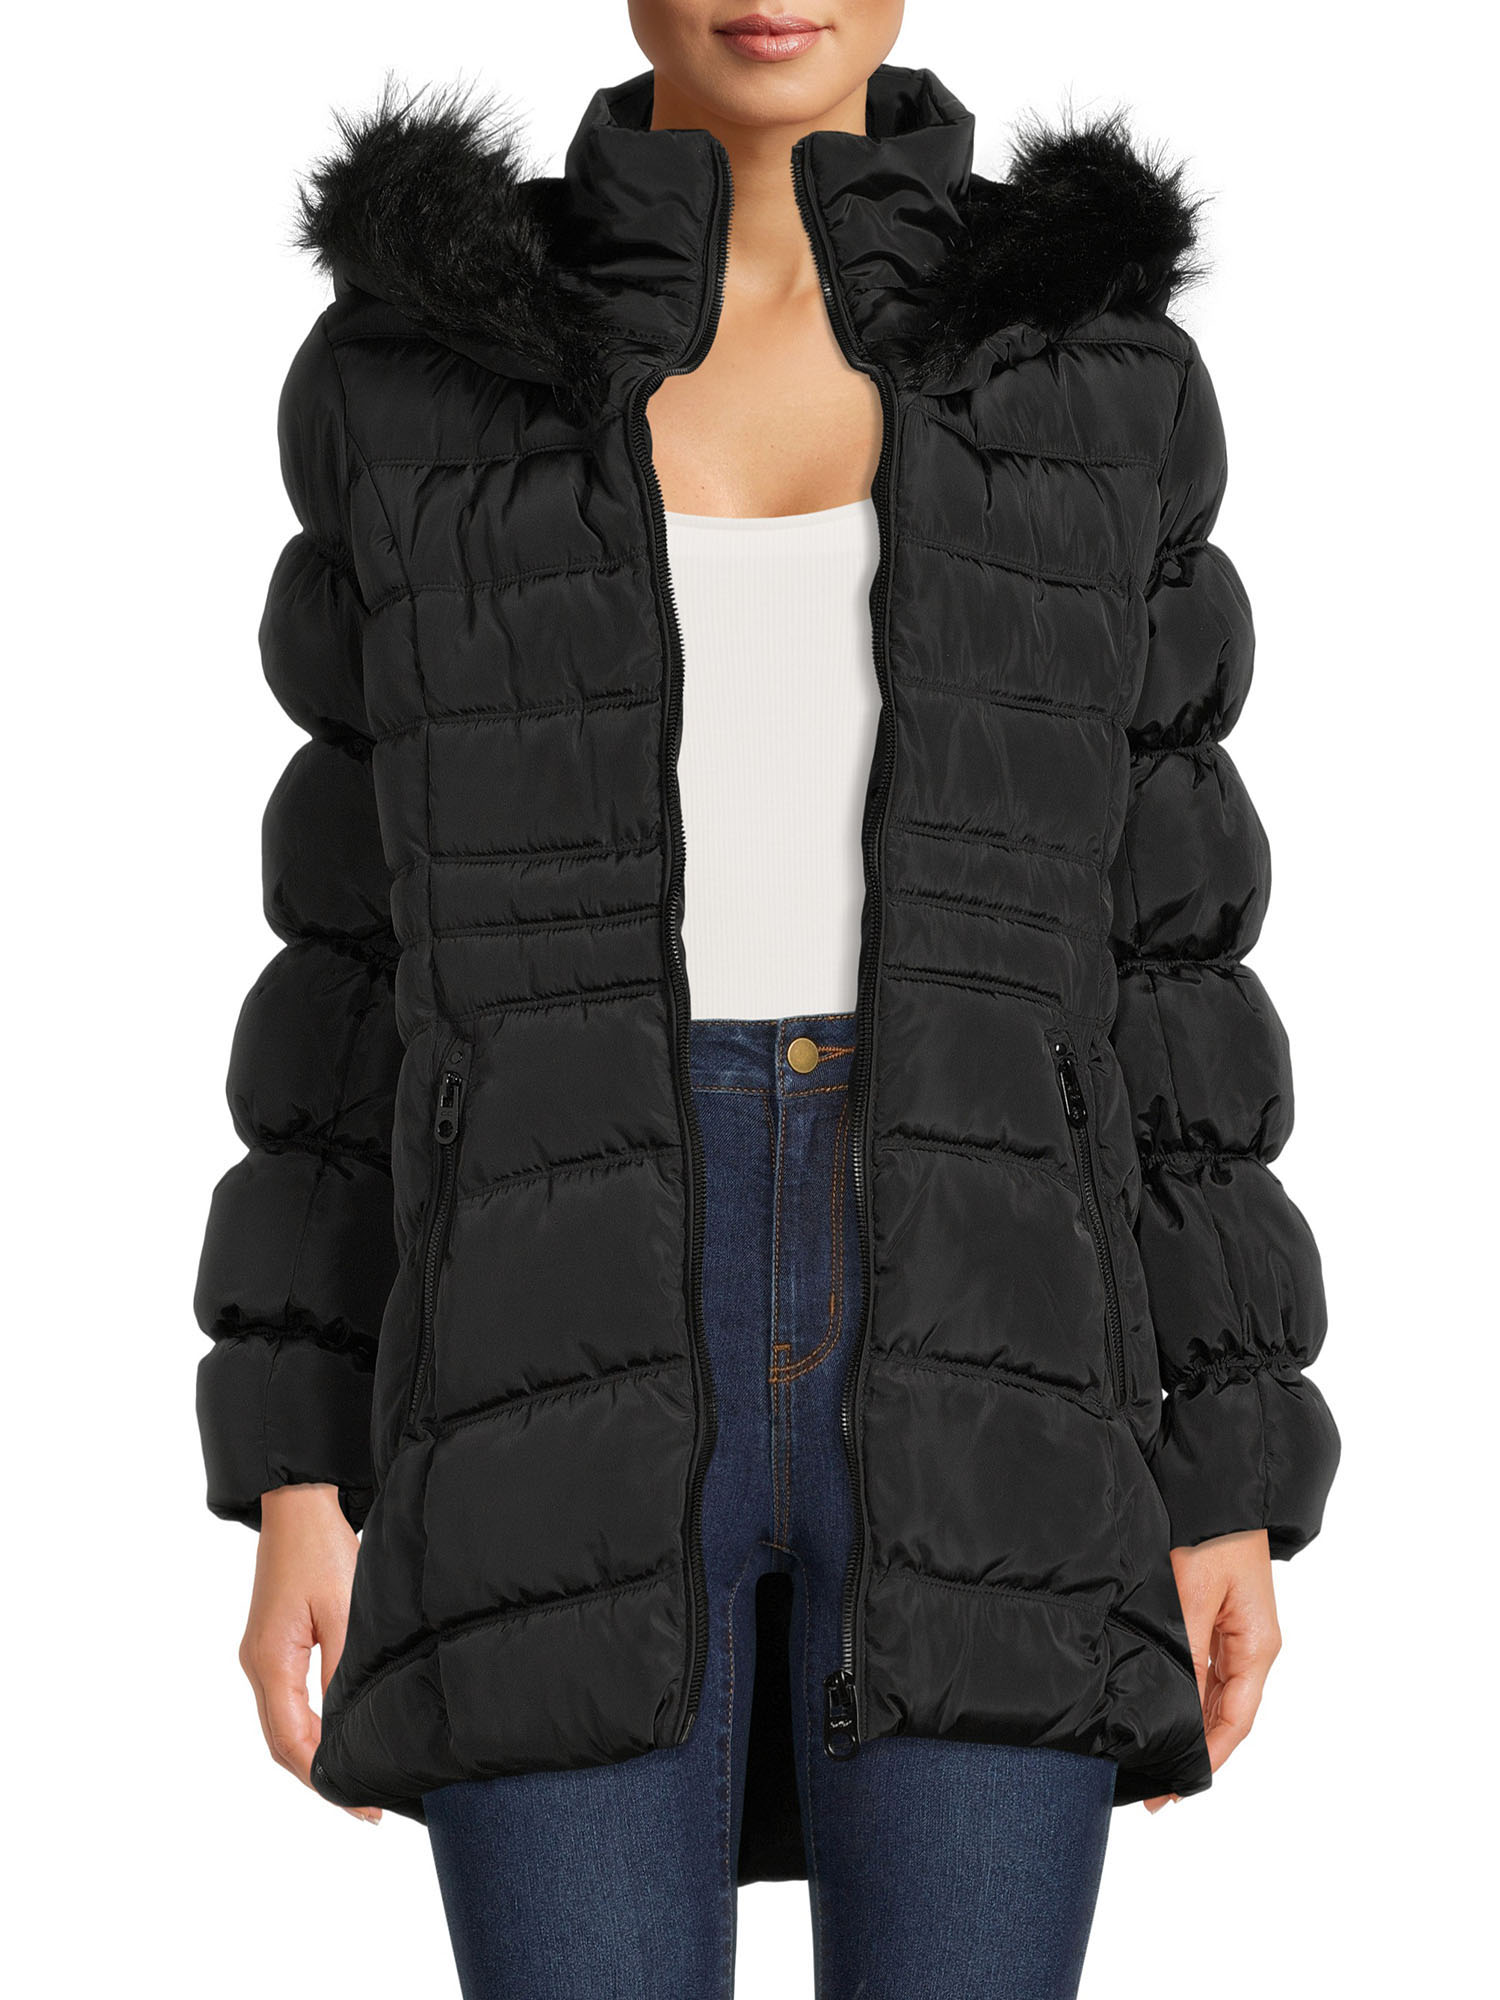 XOXO Women's Puffer Coat with Oversized Hood - image 1 of 5